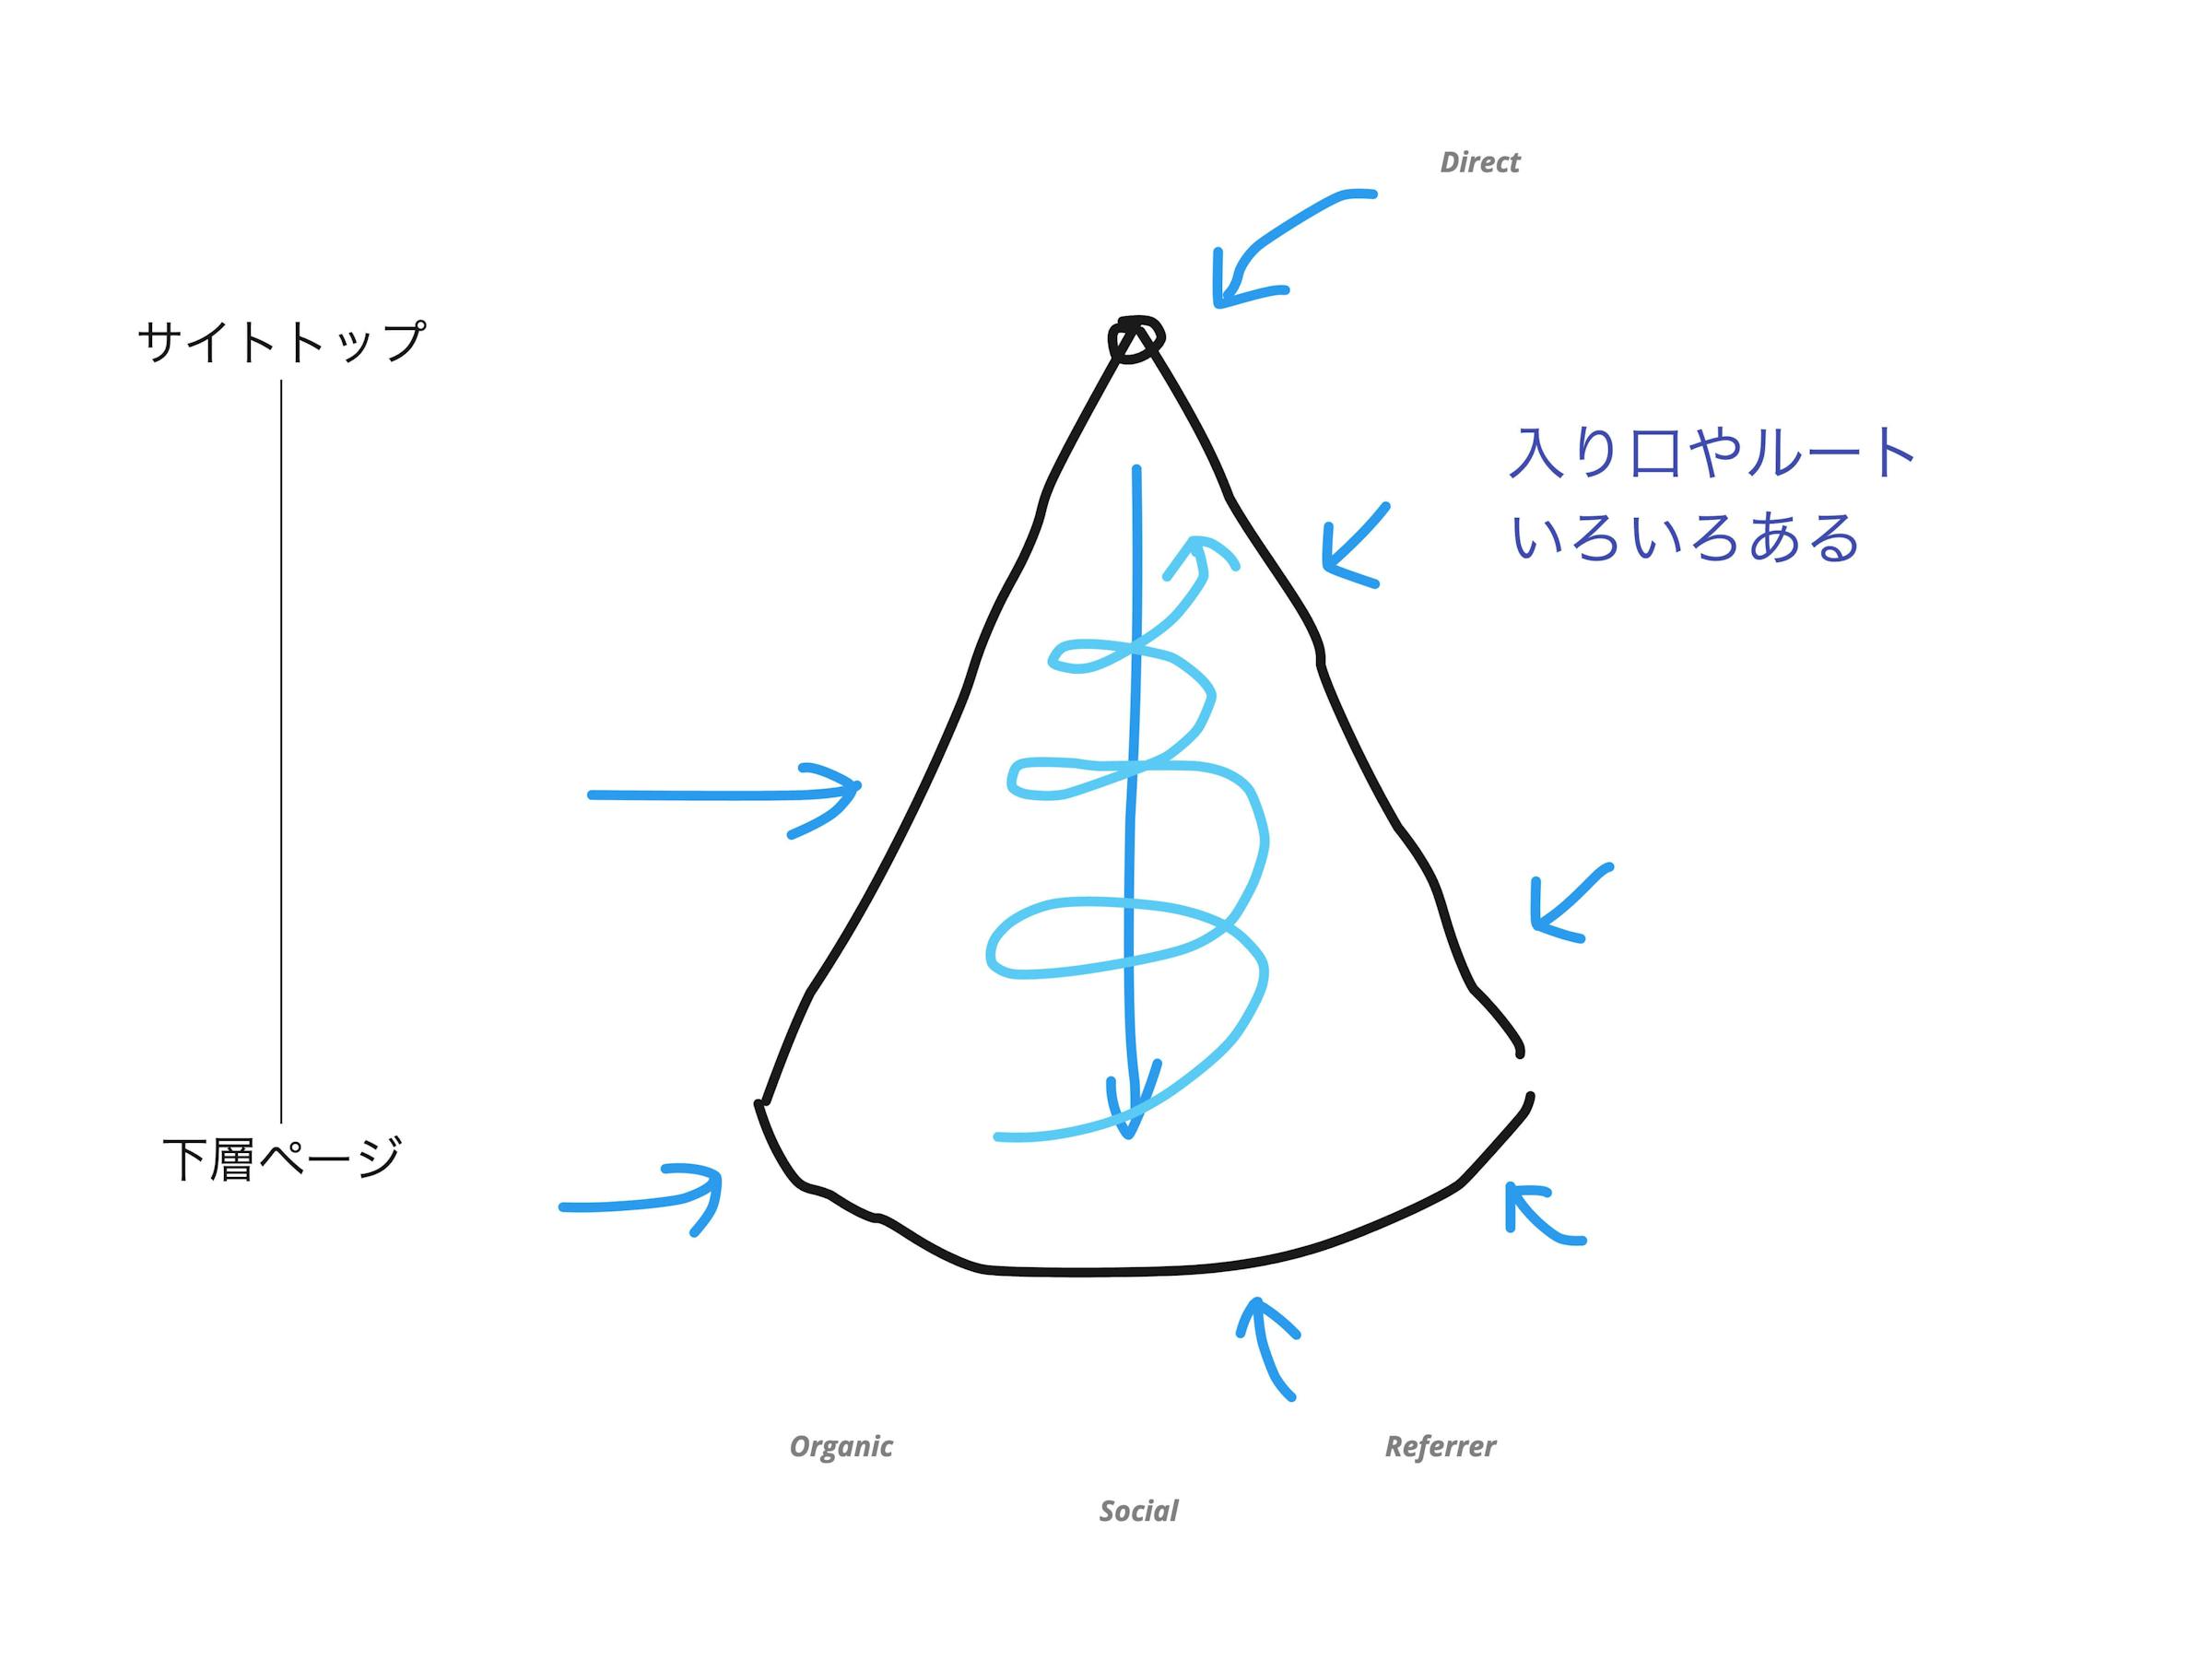 三角錐モデルには、サイトトップから下層ページまでDirect、Organic、Social、Referrerと入り口やルートがいろいろある様子を示した図。